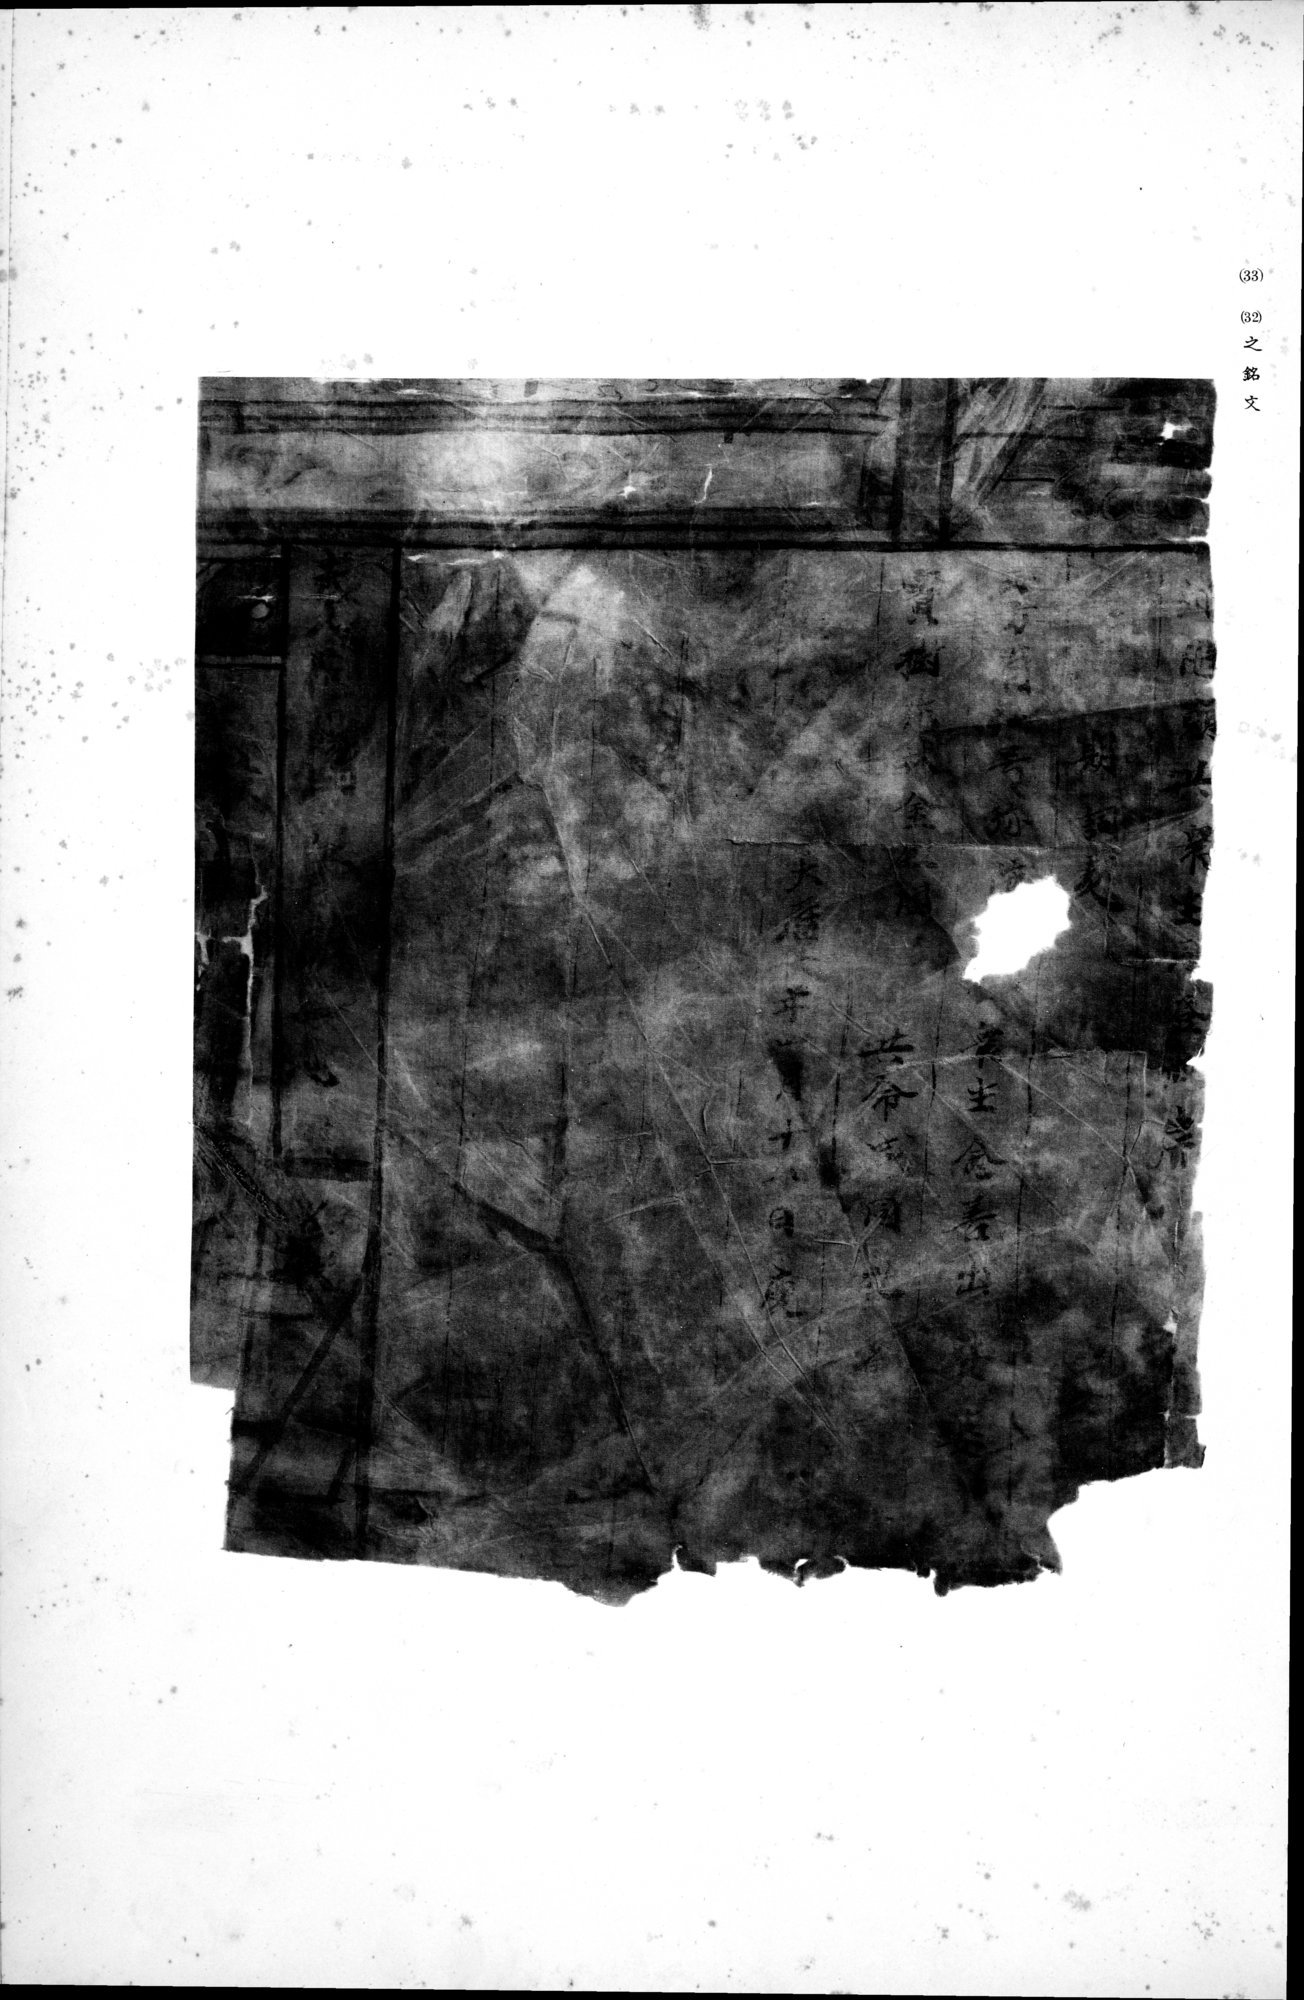 西域考古図譜 : vol.1 / Page 87 (Grayscale High Resolution Image)